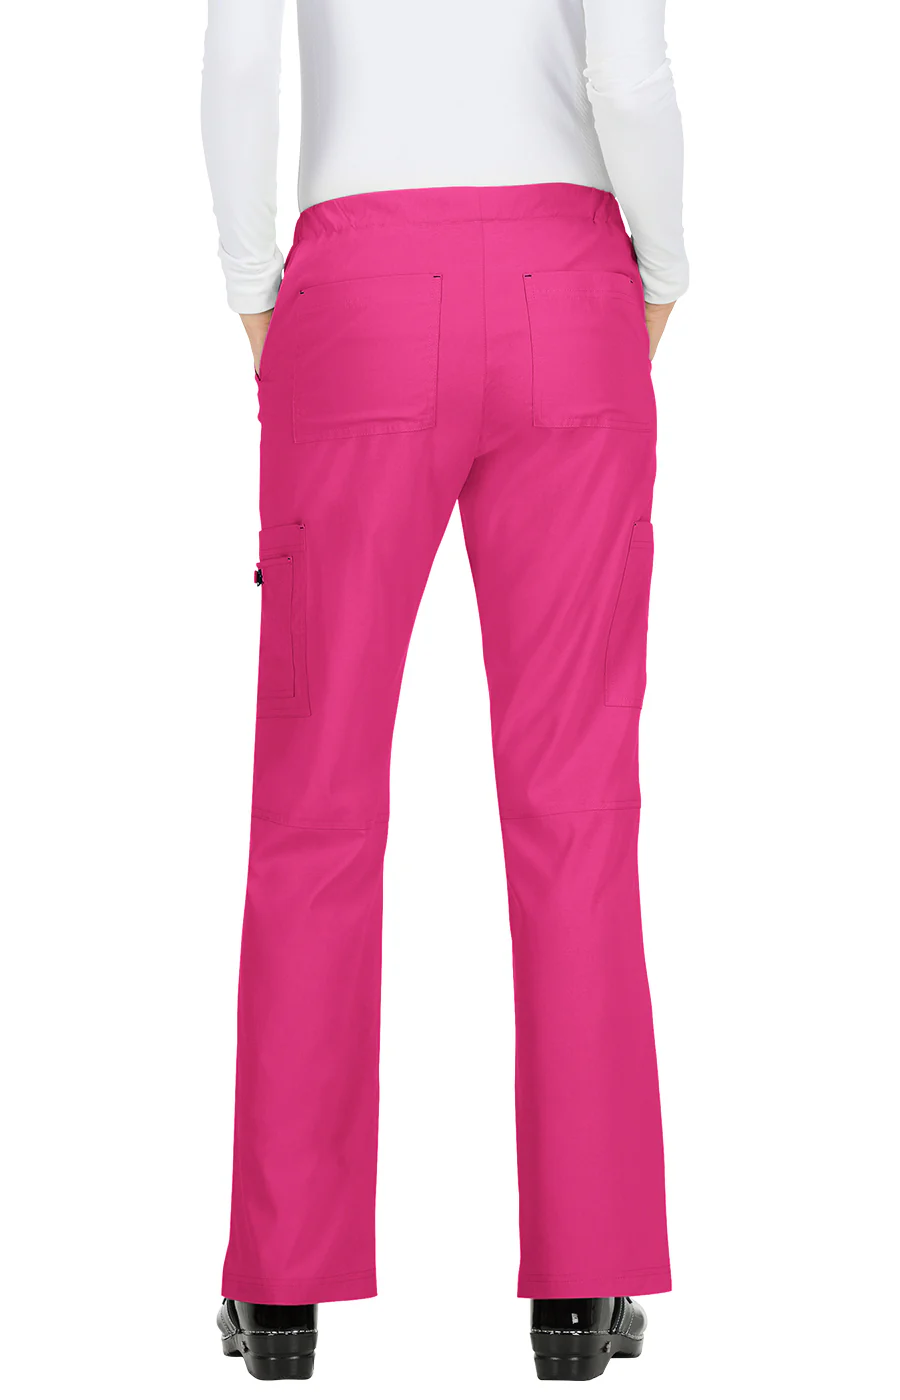 Koi Basics Pantalón Holly Mujer Flamingo Pink